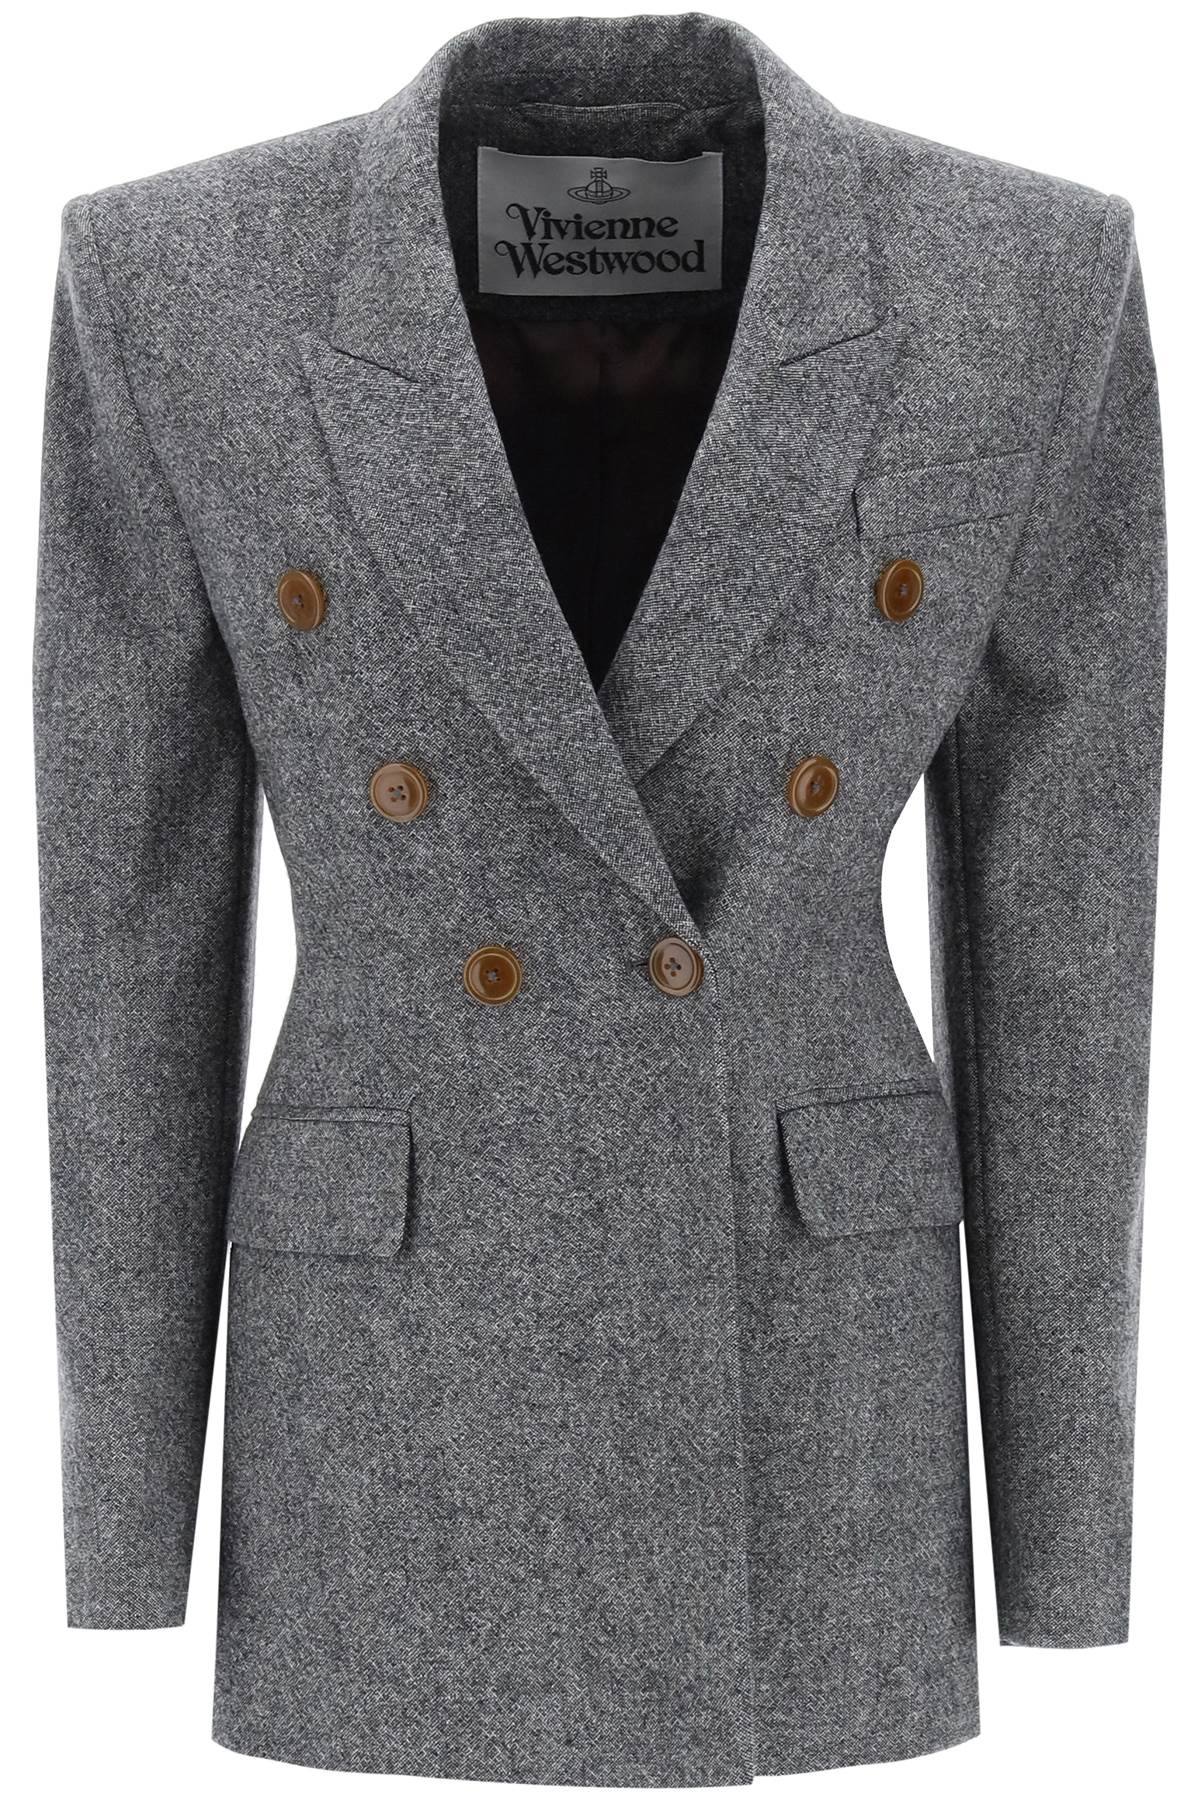 Vivienne westwood lauren jacket in donegal tweed